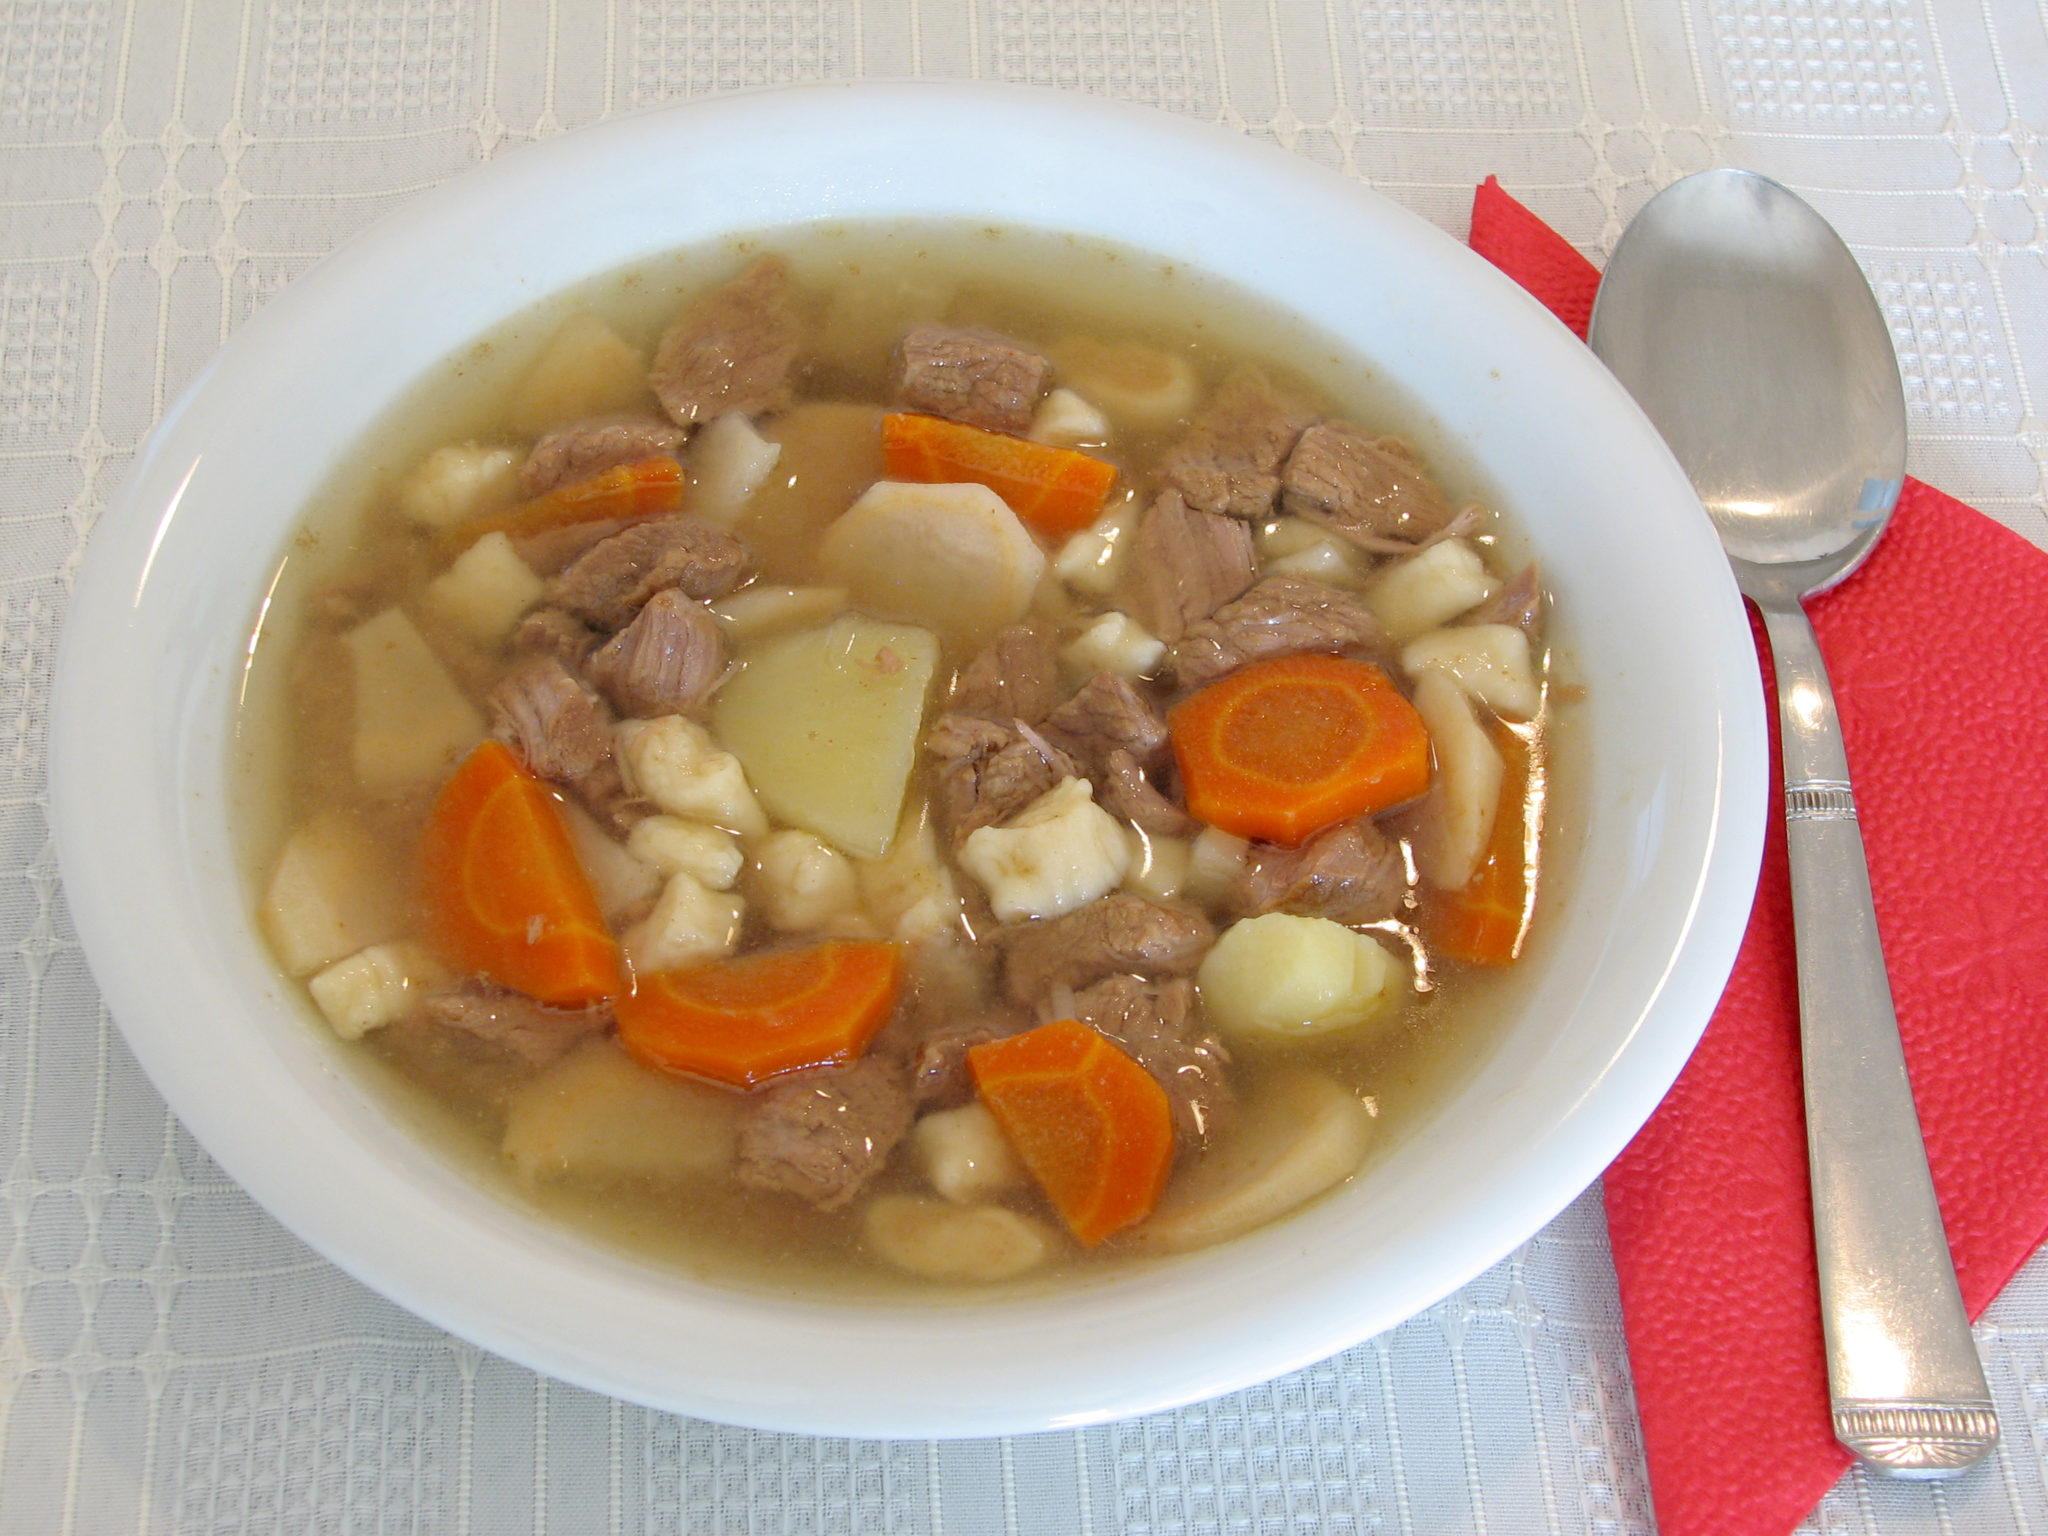 Hungarian_goulash_soup